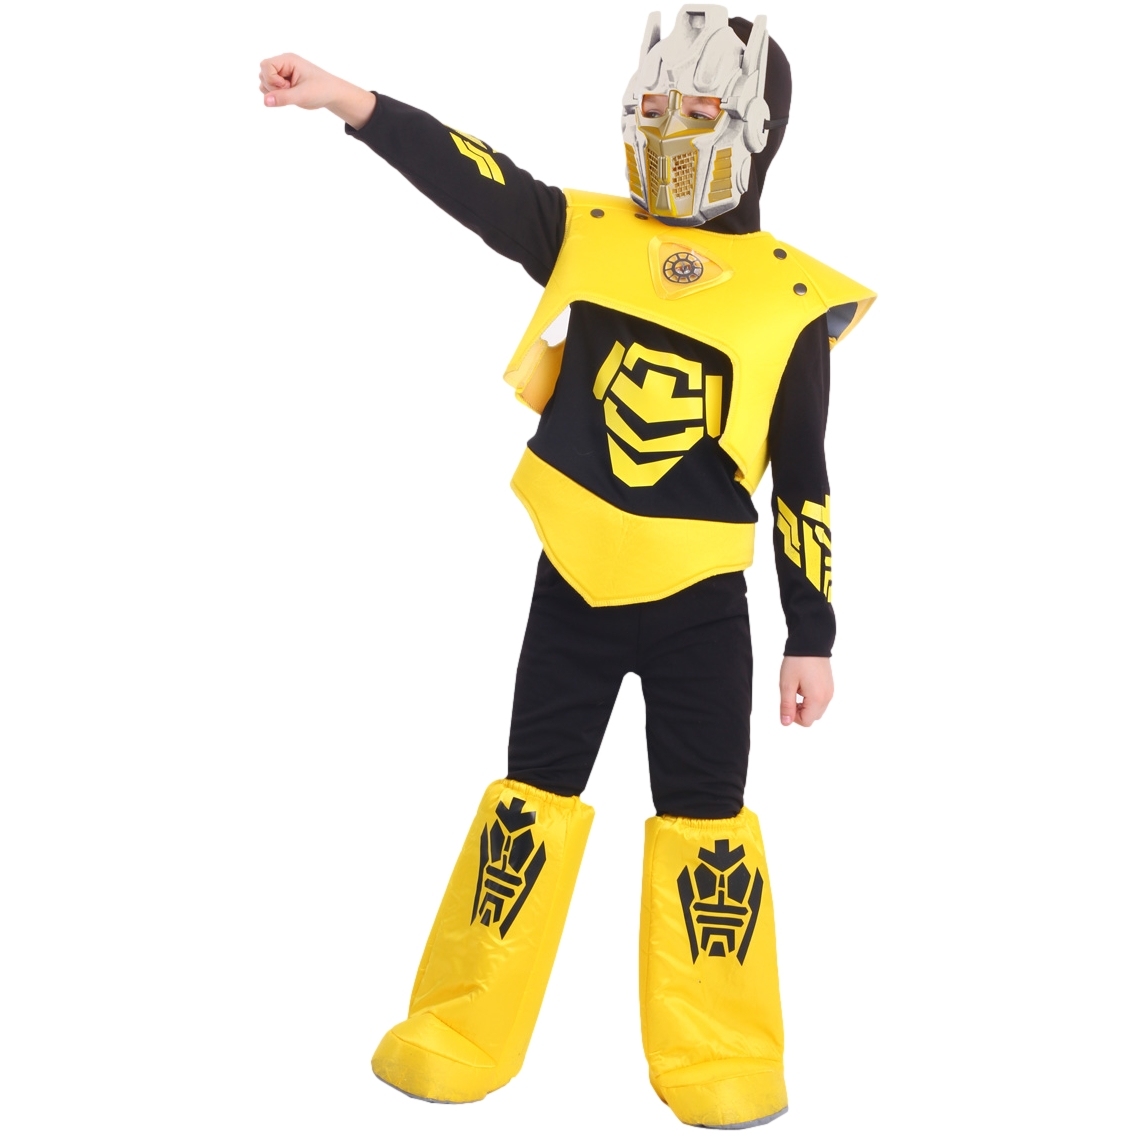 Карнавальный костюм "Робот" (рубашка с капюшоном,брюки,жилет,ботинки,маска) размер 116-60